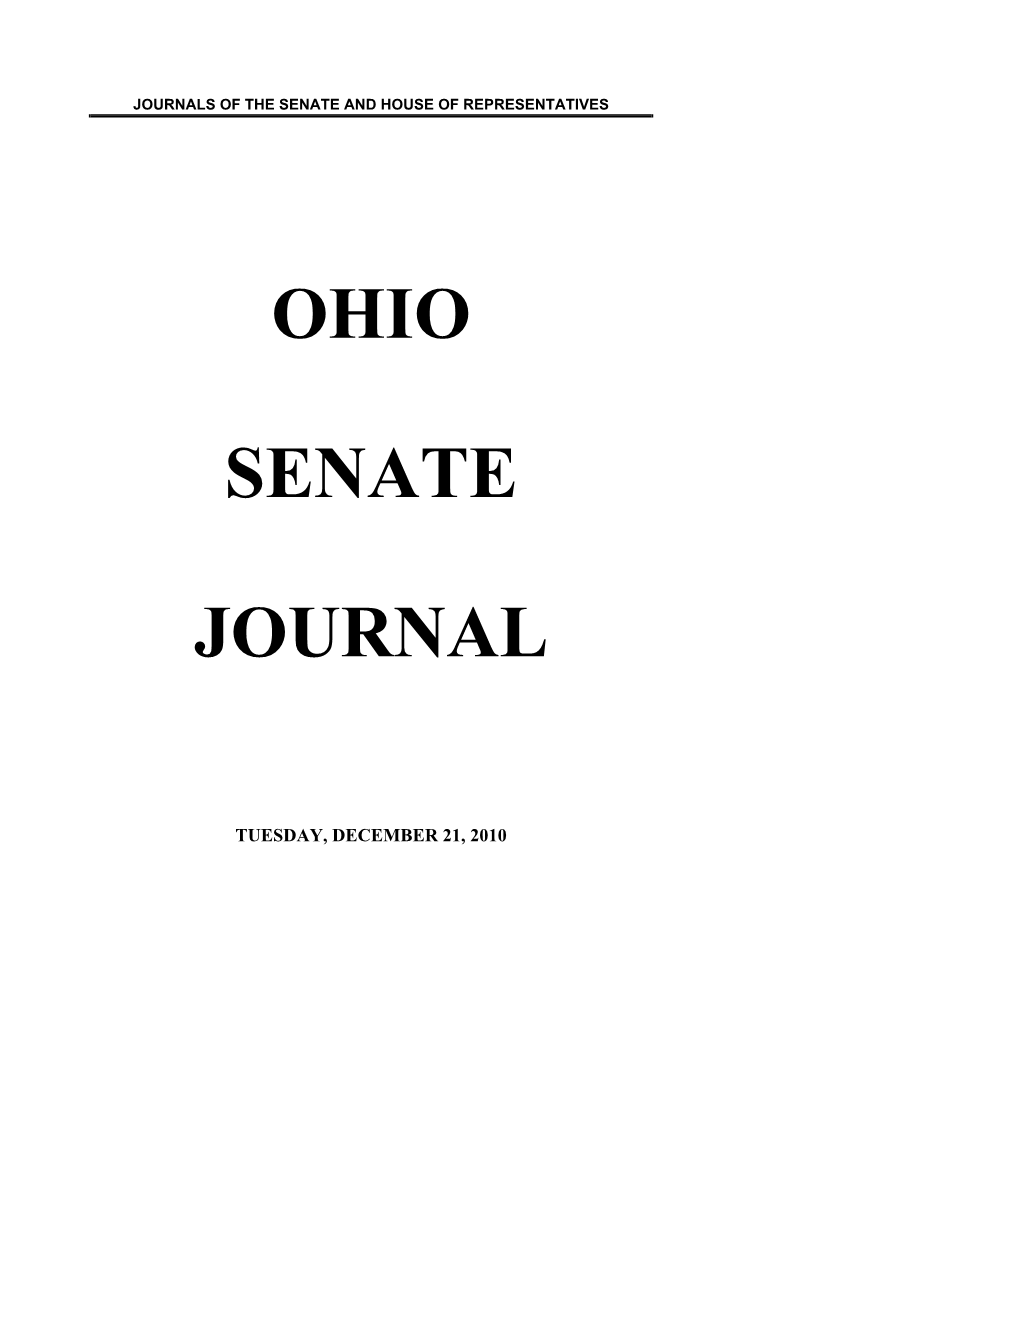 Ohio Senate Journal, May 25, 2010, Page 2739)